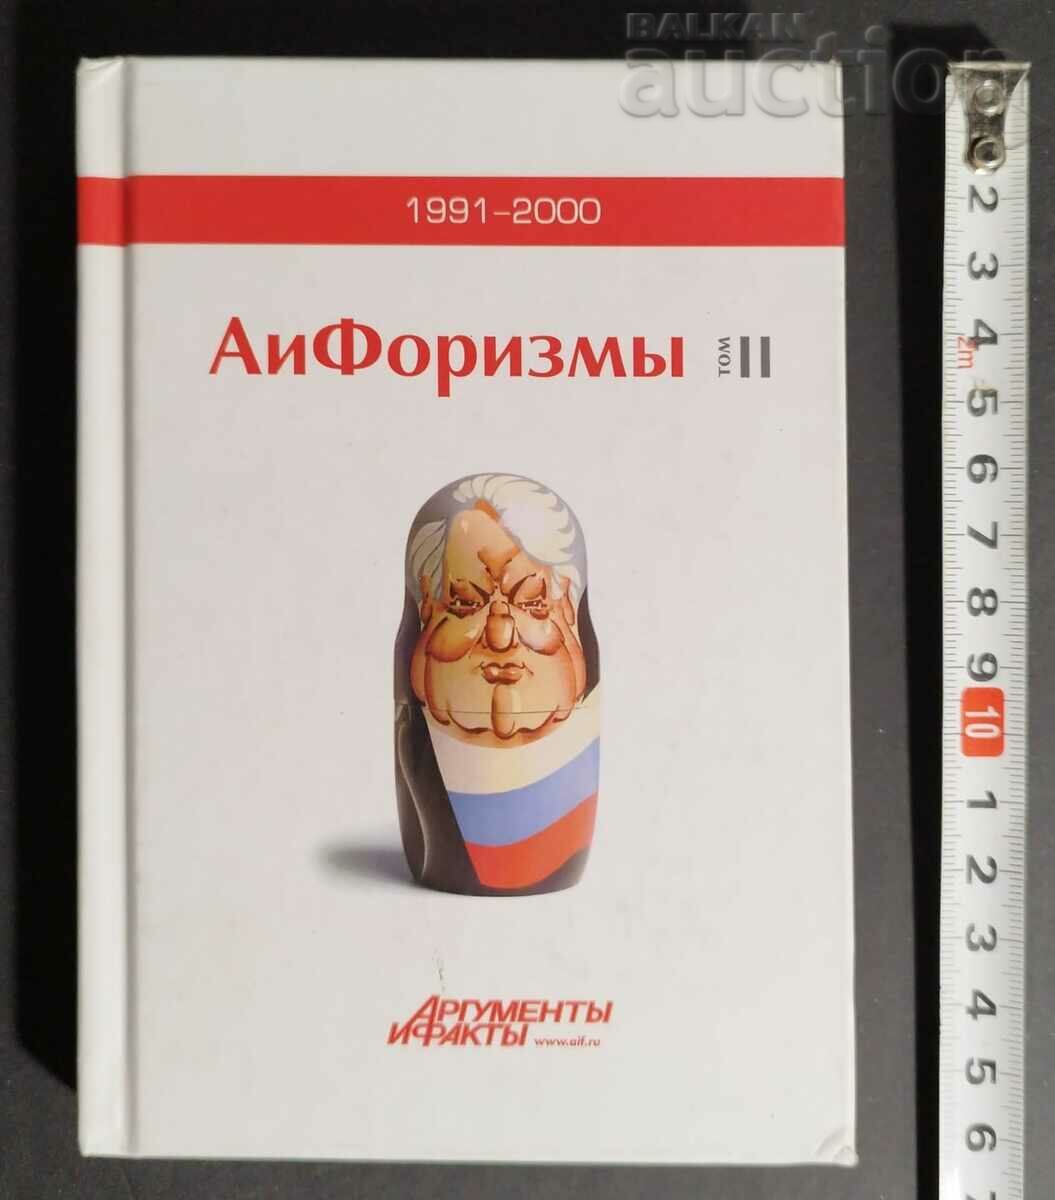 1991-2000 & АиФоризмы  АРГУМЕНТЫ И ФАКТЫ «w.alf.ru Отпеча...